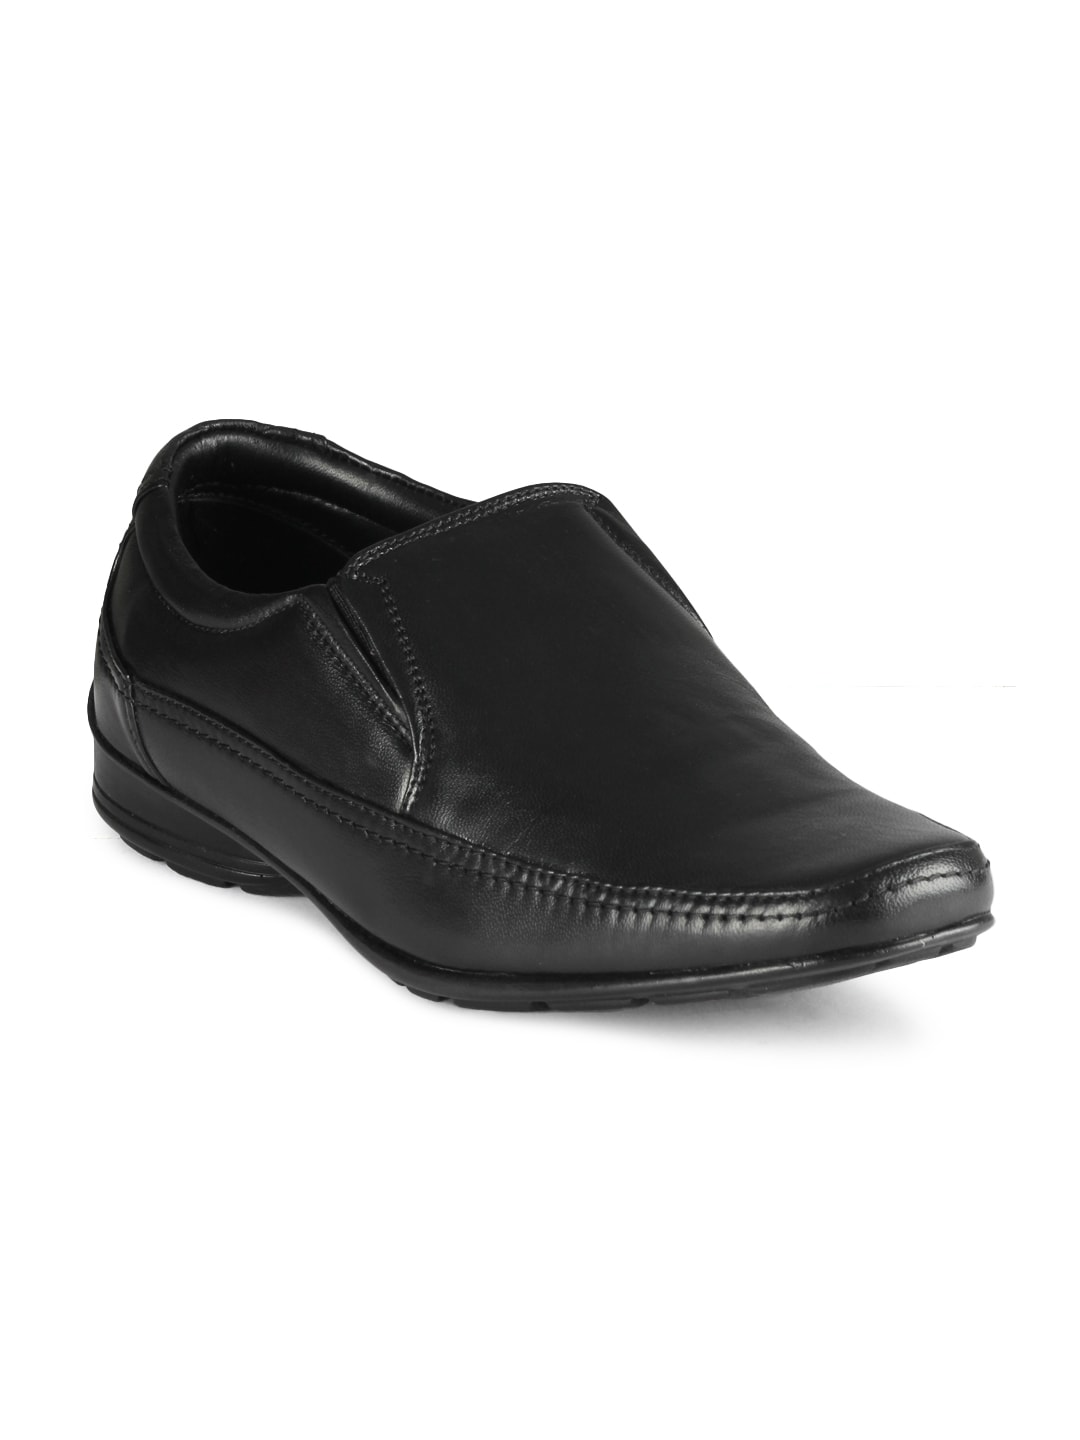 Franco Leone Men Formal Shoes